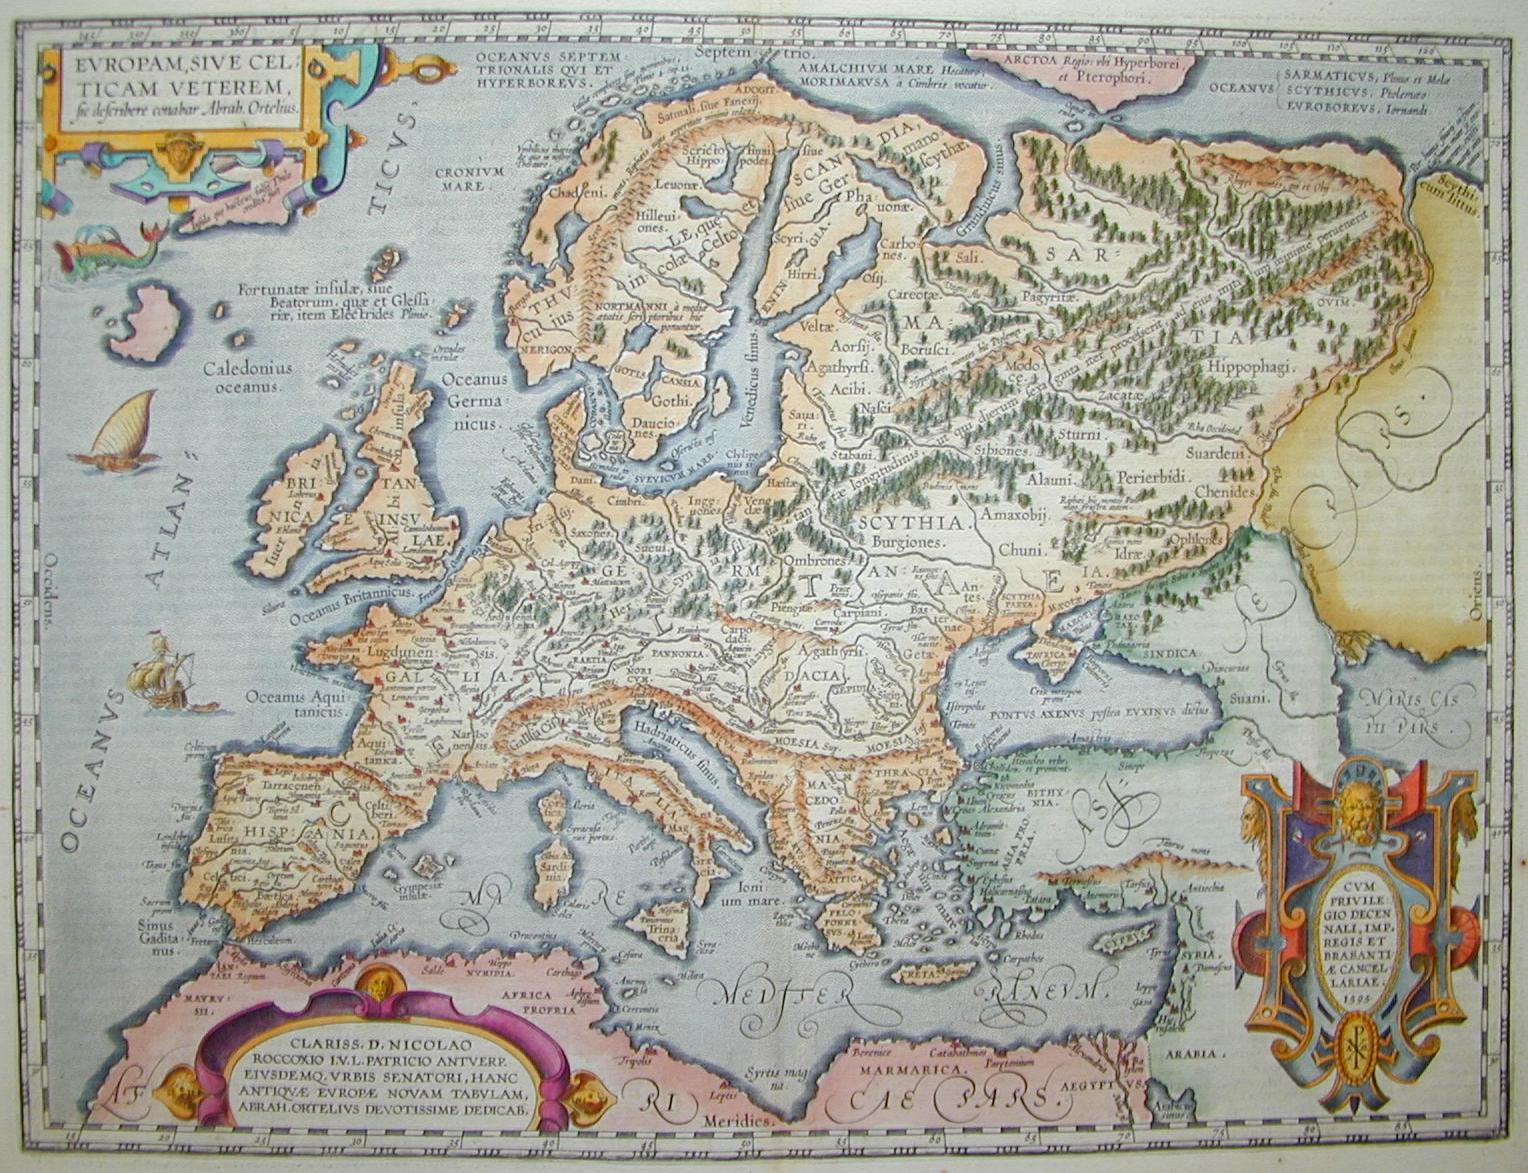 Europa Celtica 1595